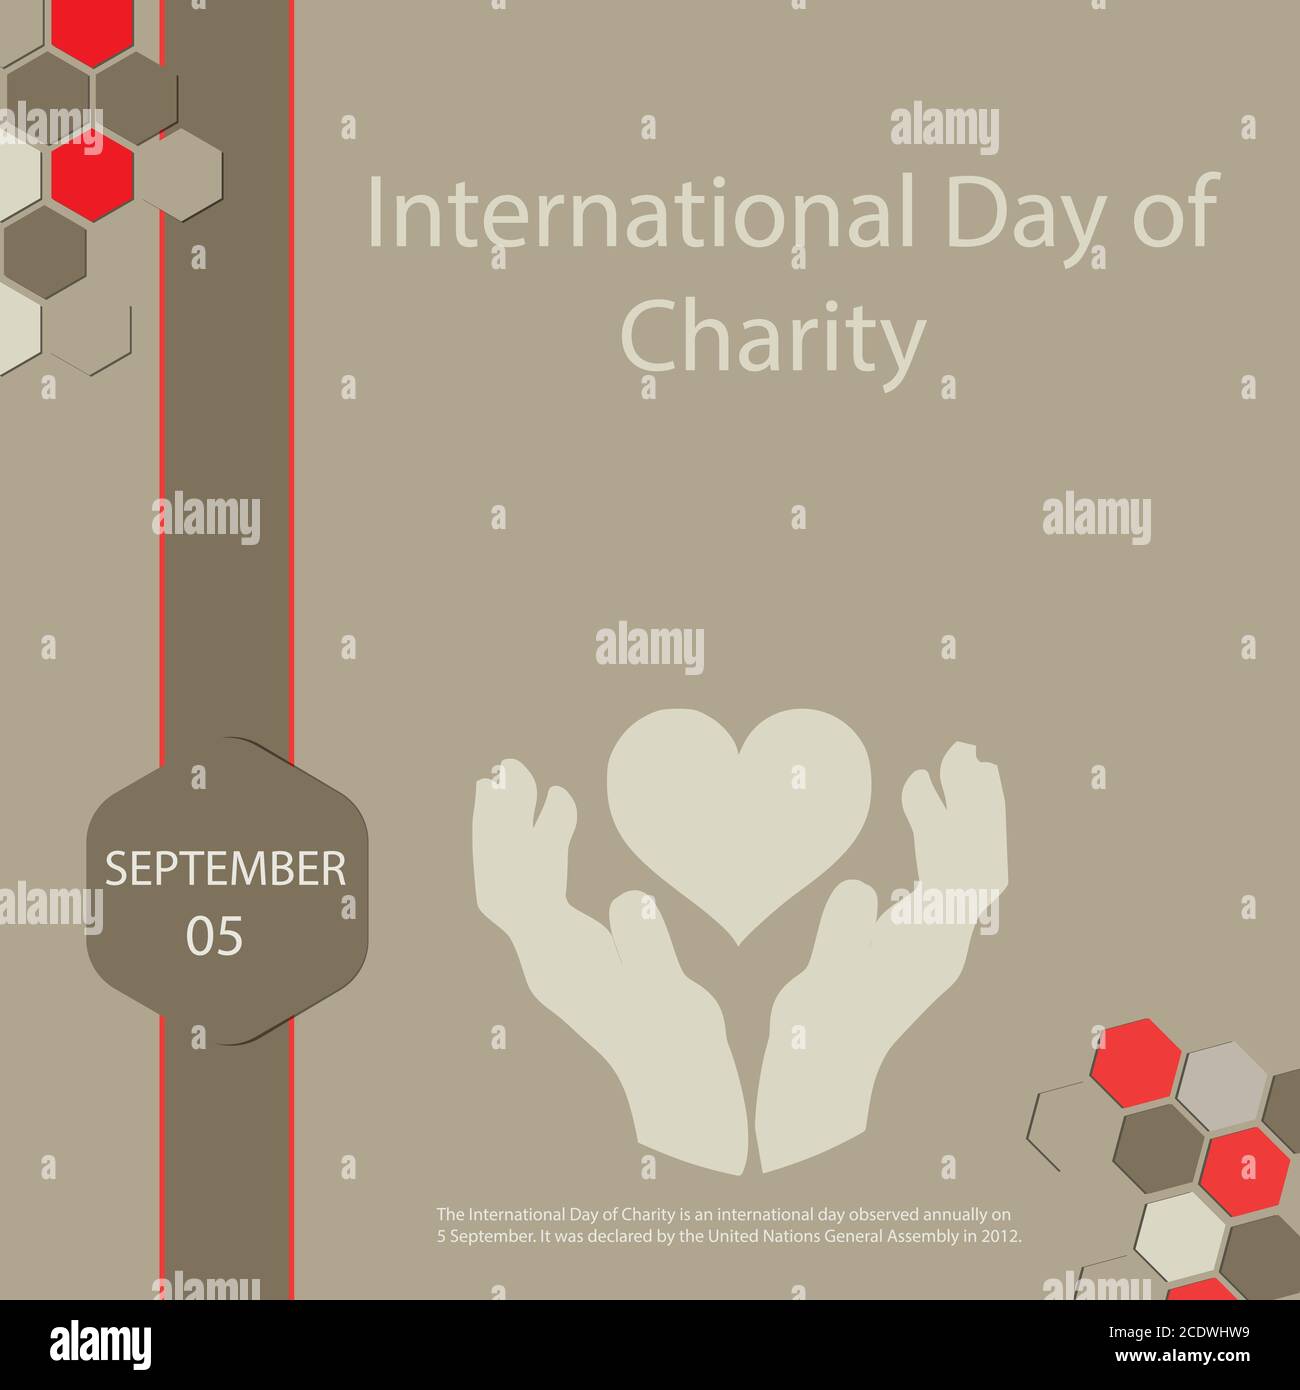 El día Internacional de la Caridad es un día internacional que se celebra anualmente el 5 de septiembre. Fue declarado por la Asamblea General de las Naciones Unidas en 2 Ilustración del Vector